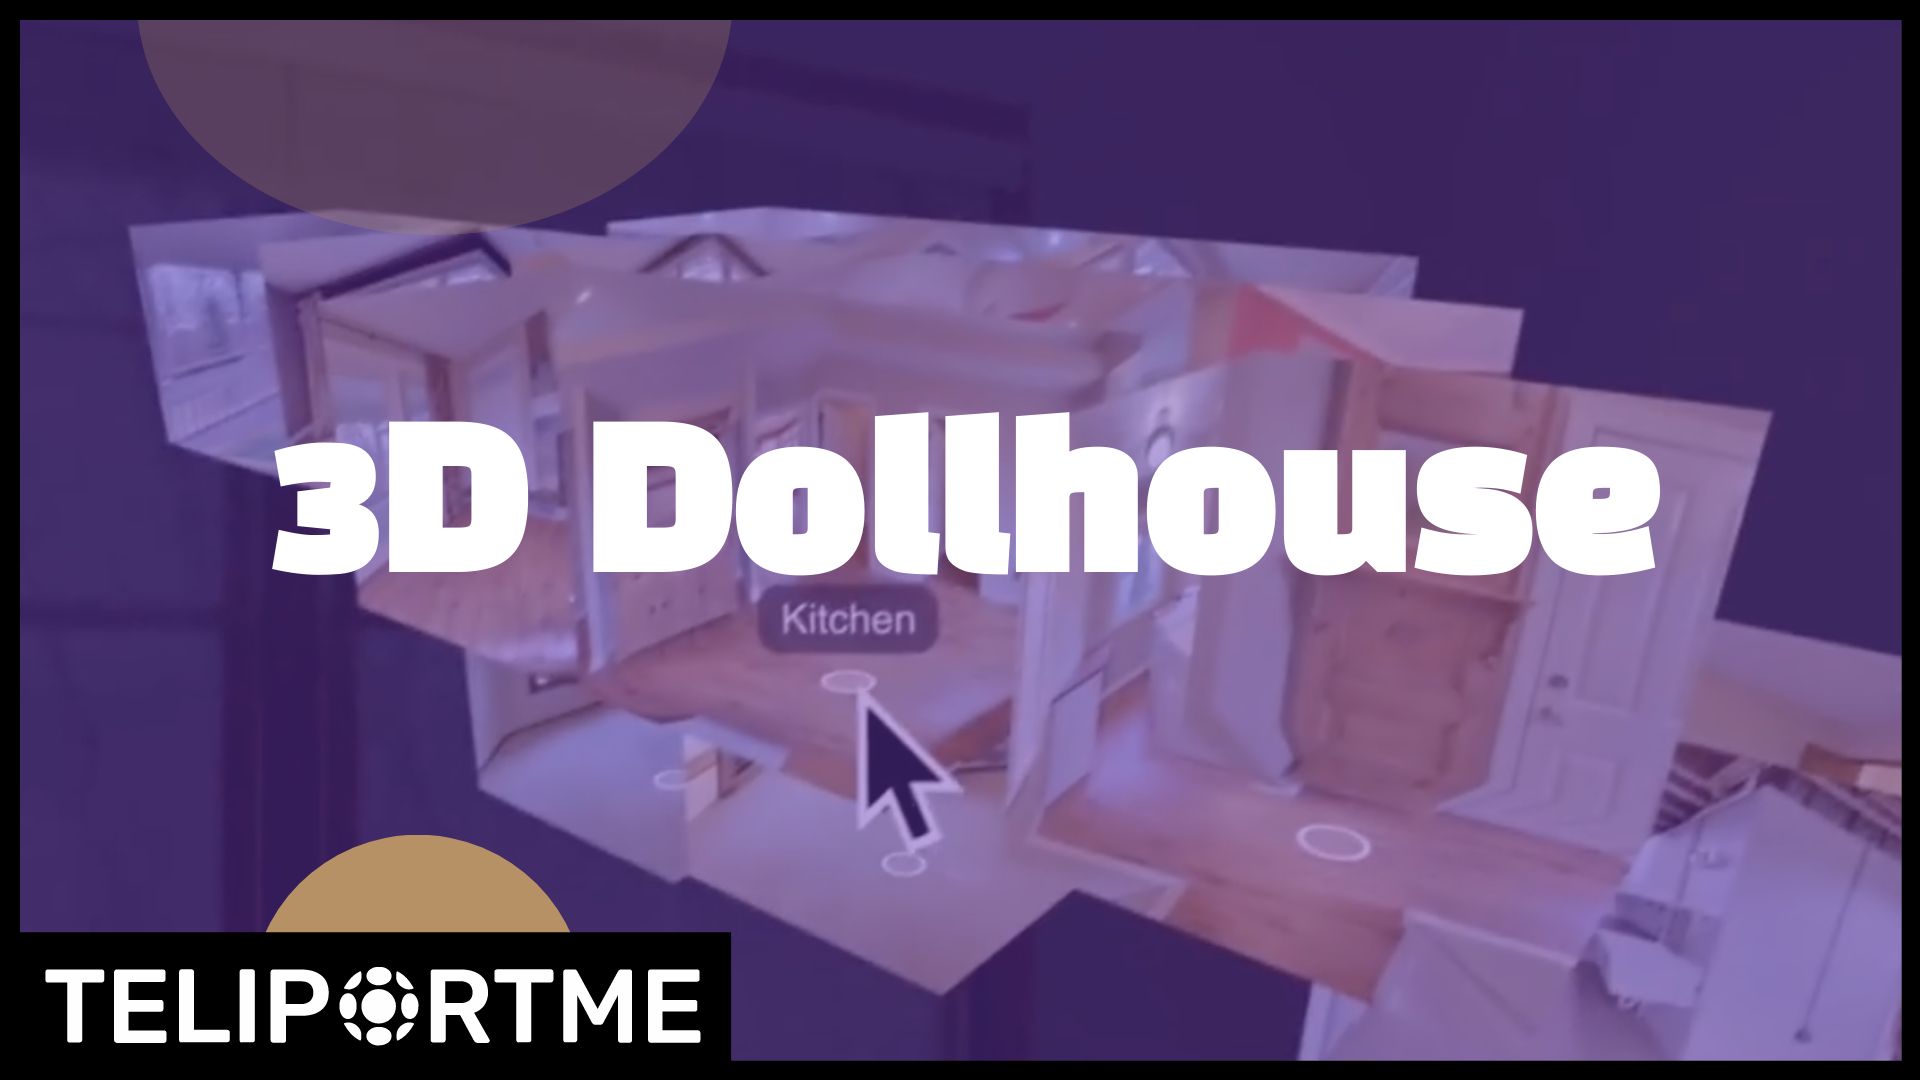 Introducing 3D dollhouse